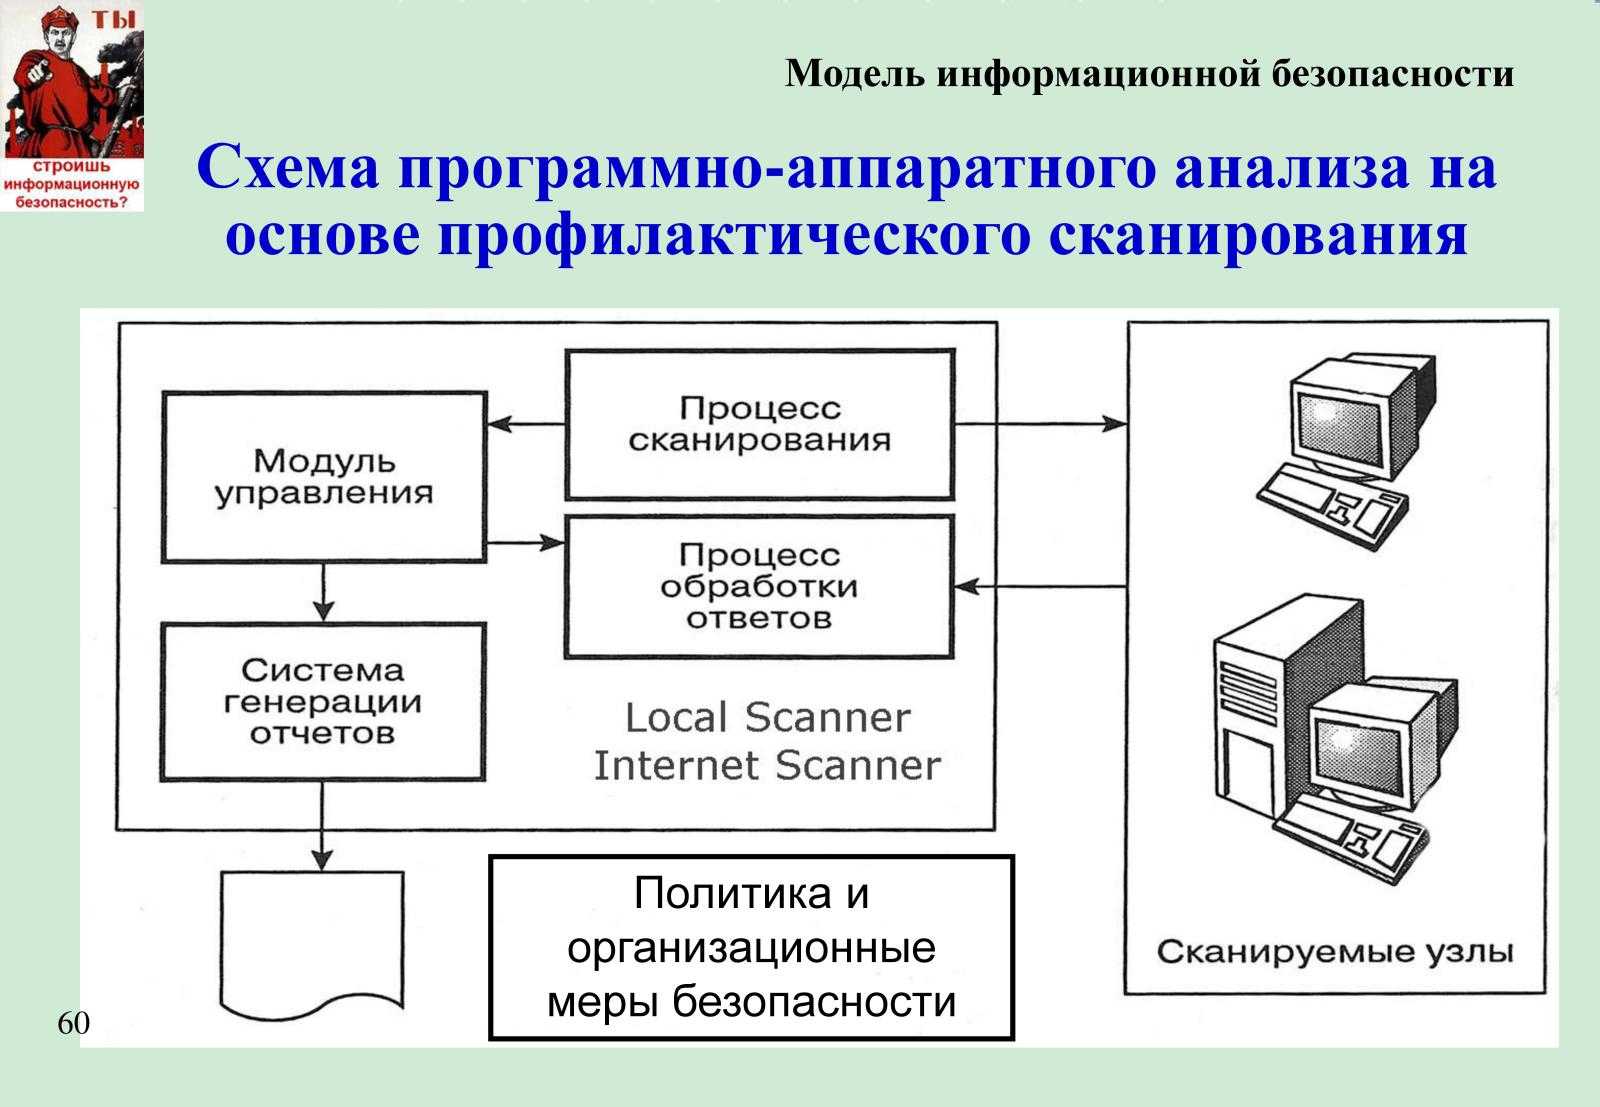 Создание и управление базой данных. курсовая работа (т). информационное обеспечение, программирование. 2012-10-07